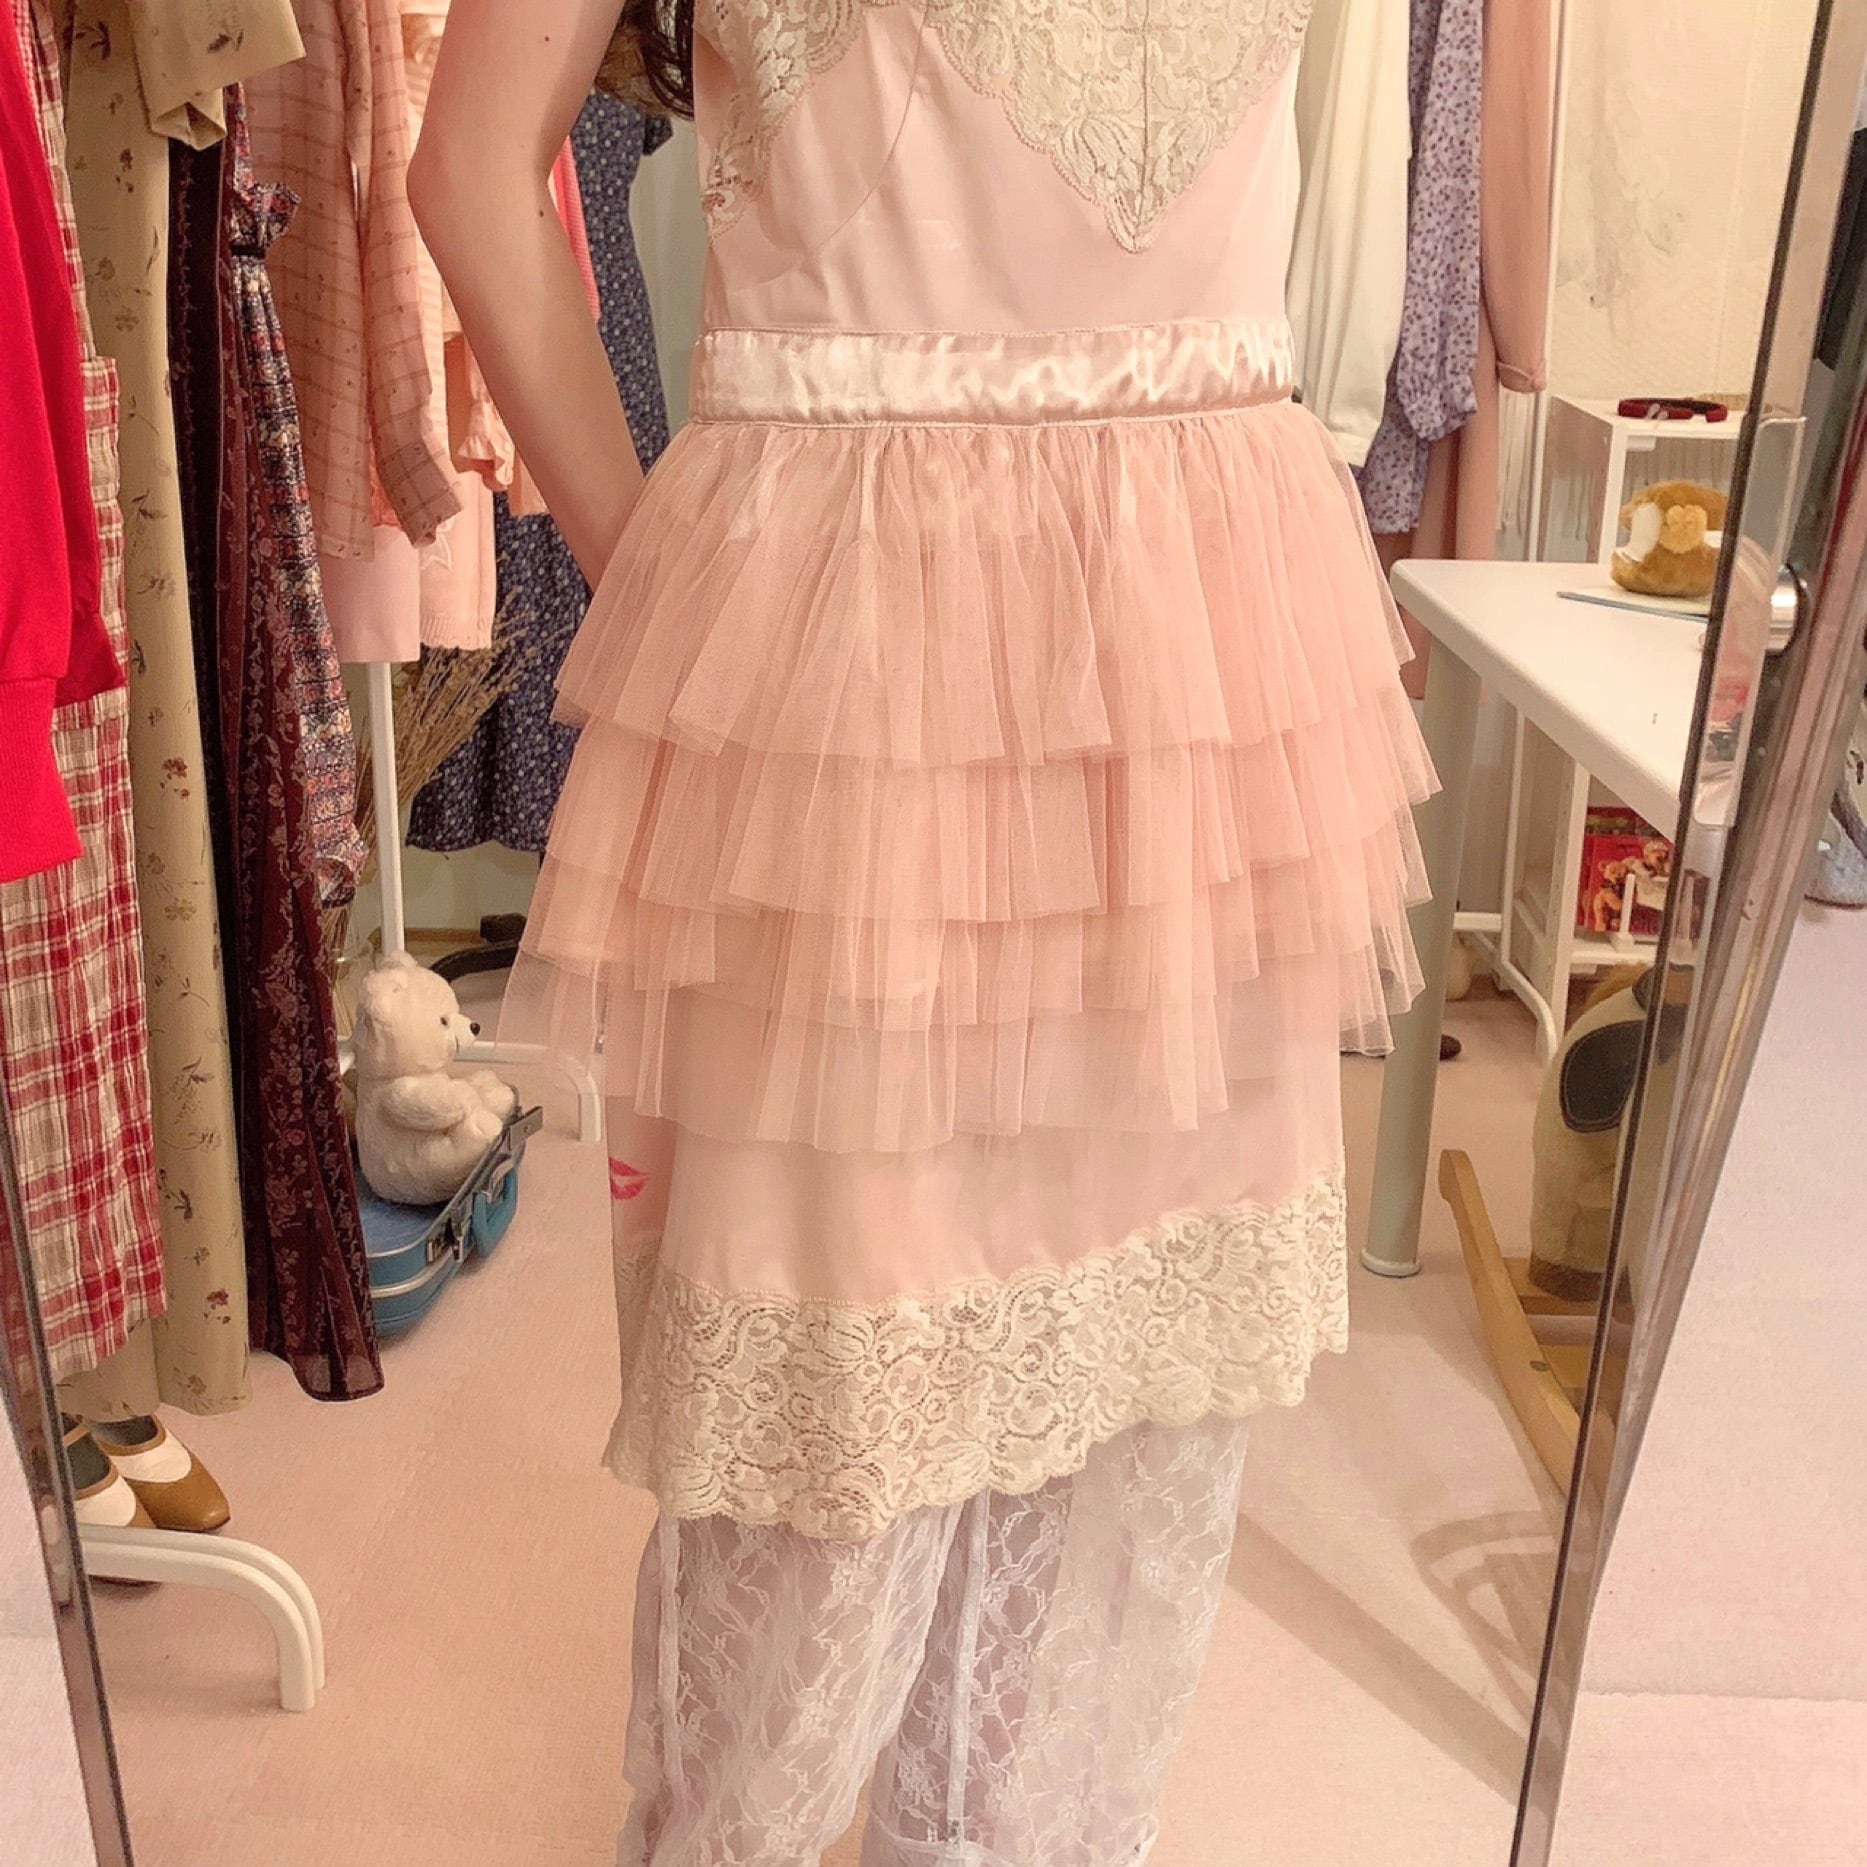 remake : old night rose tutu lingerie dress